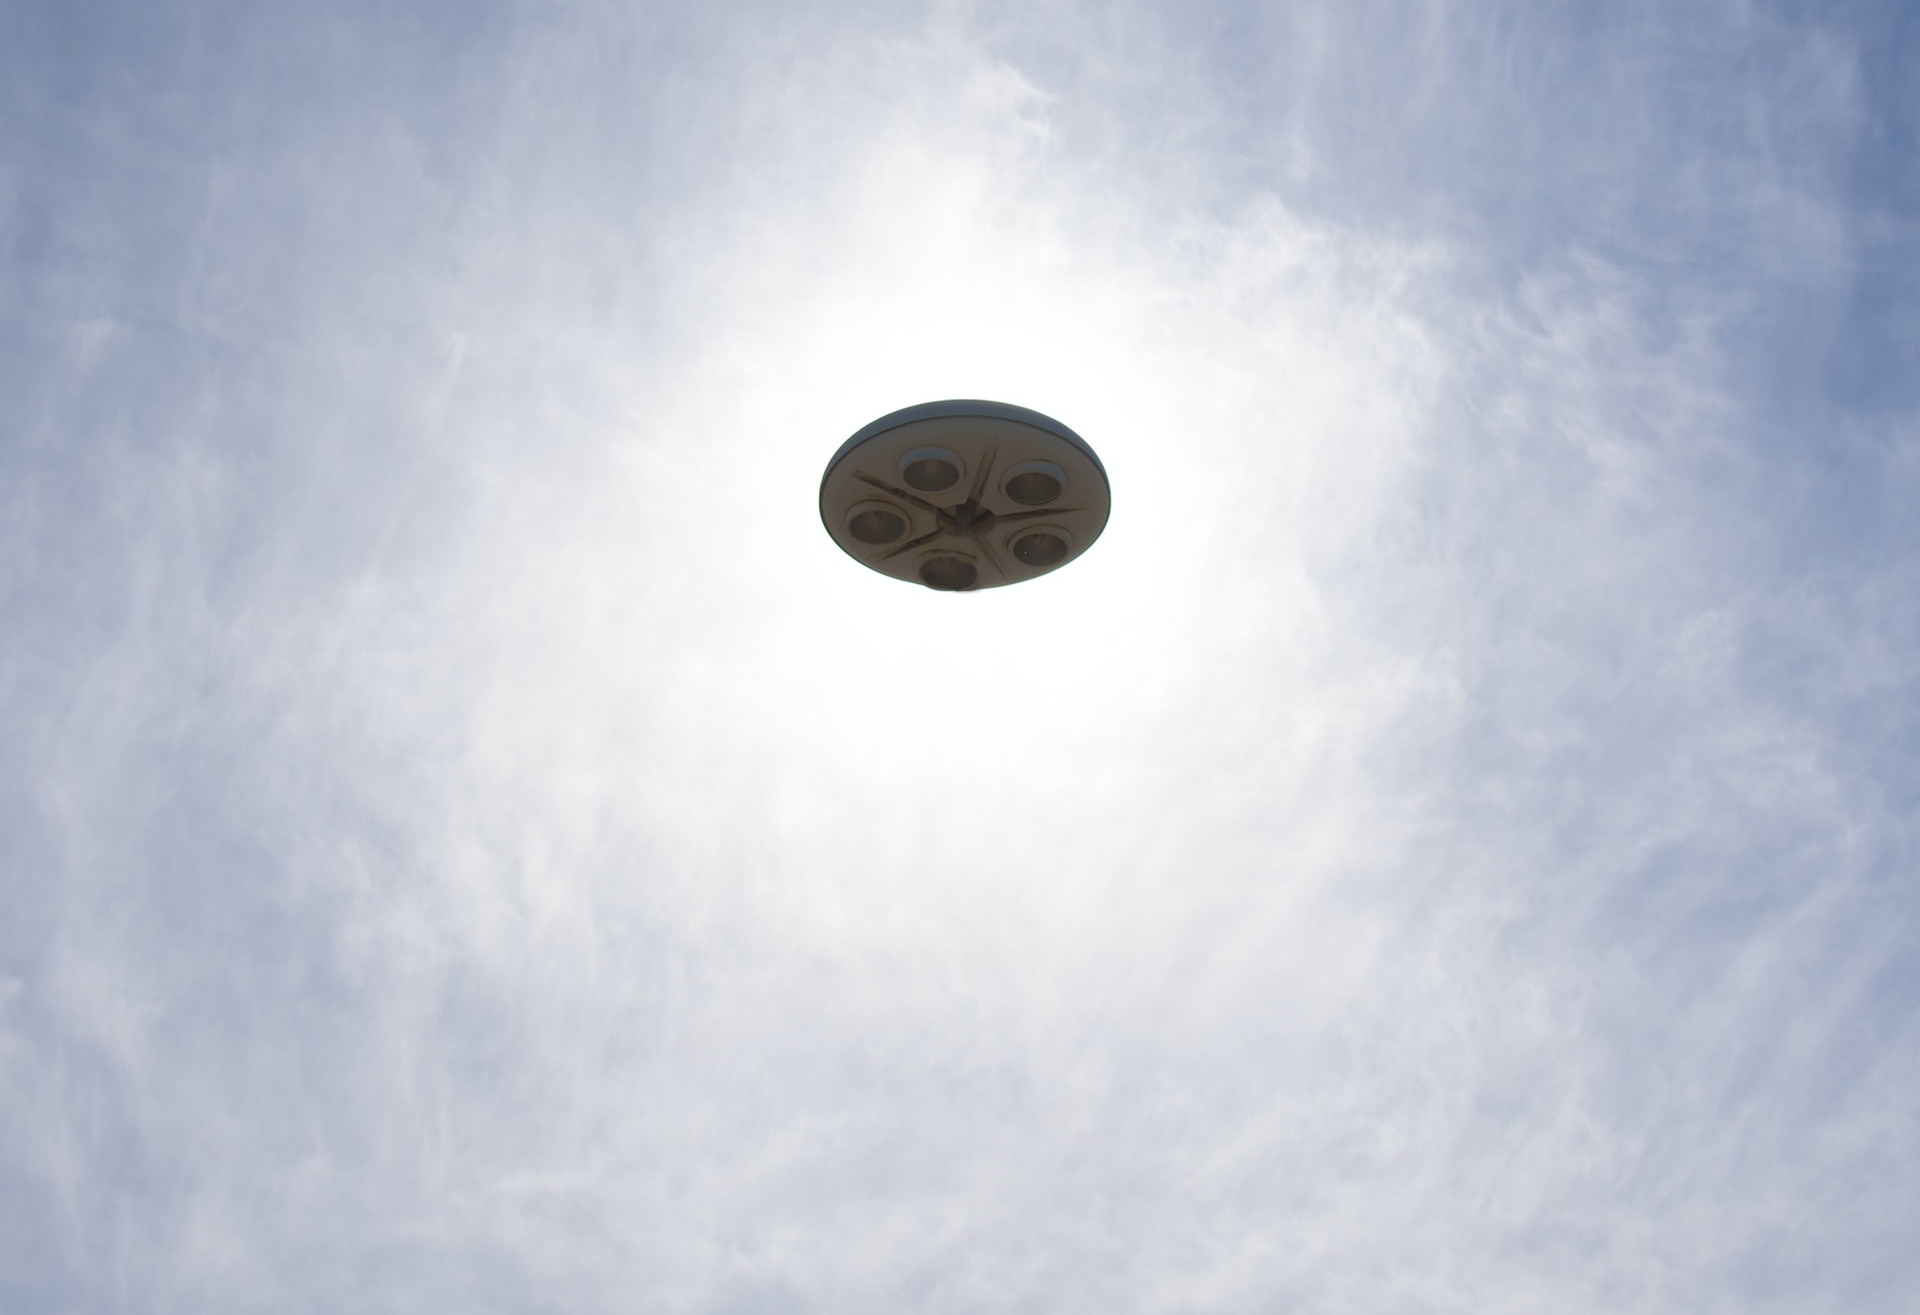 Агентство признает, что НЛО удивительны и неестественны